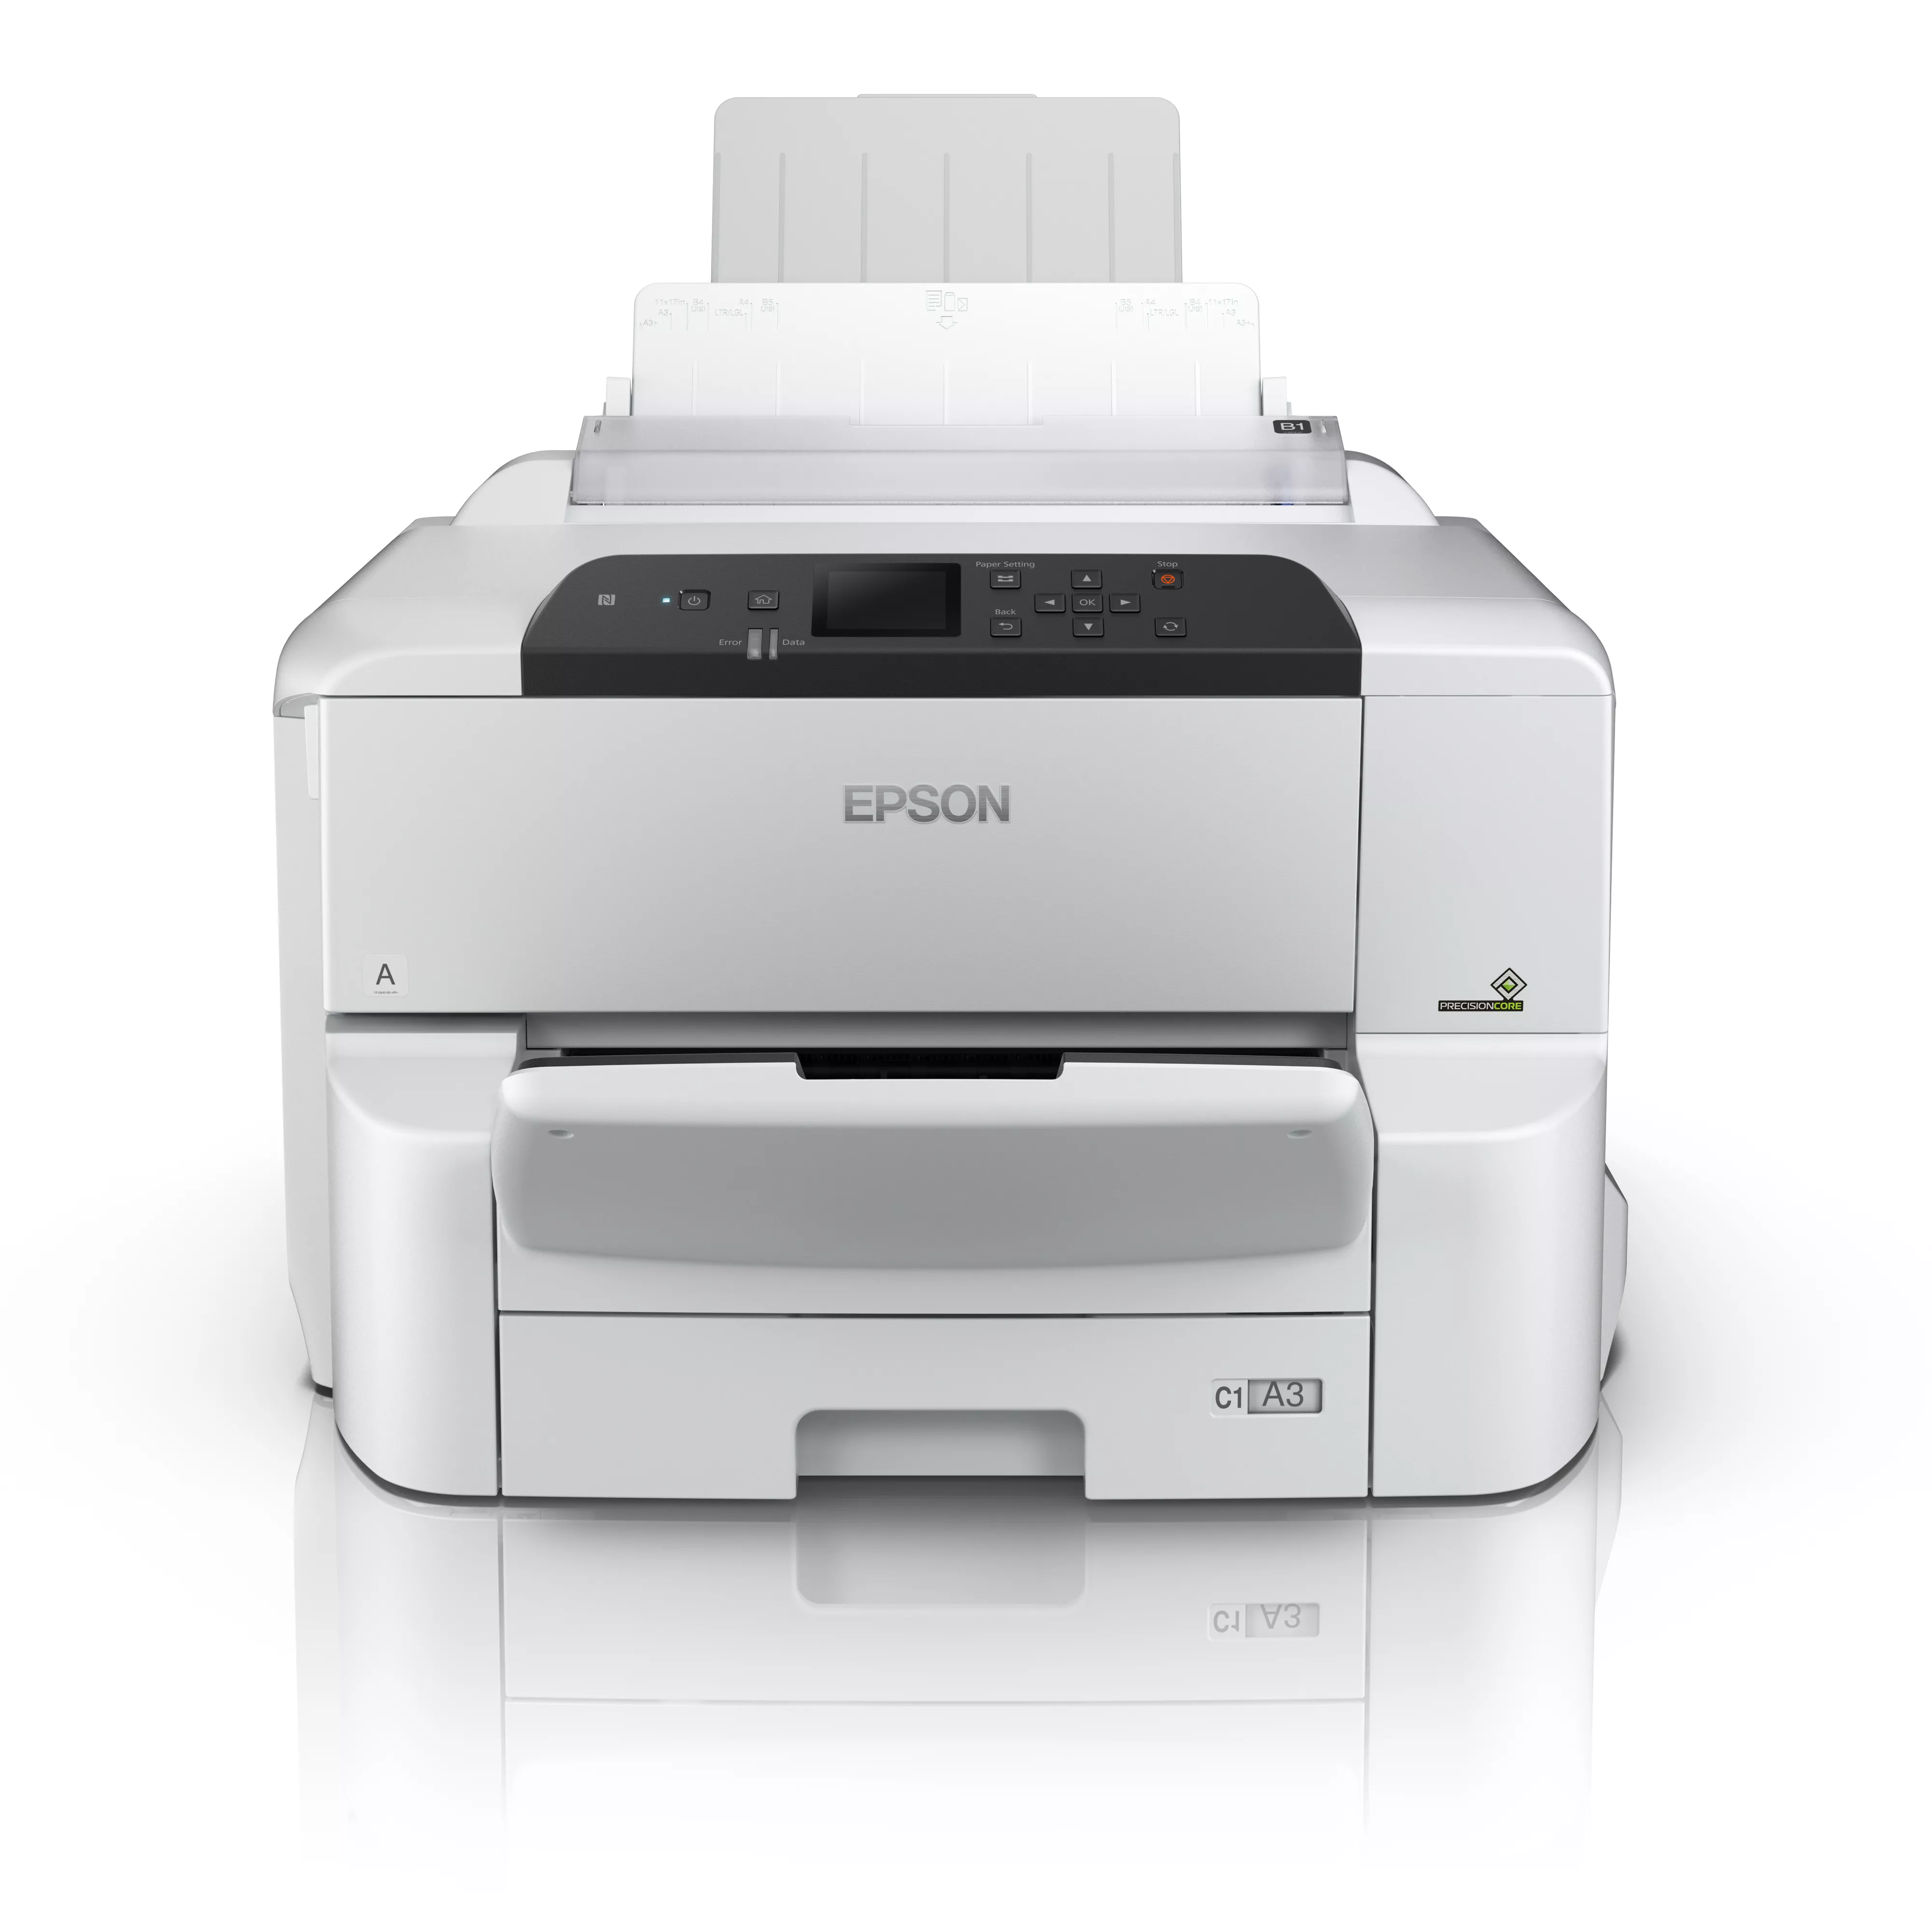 Vente EPSON WorkForce Pro WF-C8190DW Printer colour Duplex au meilleur prix